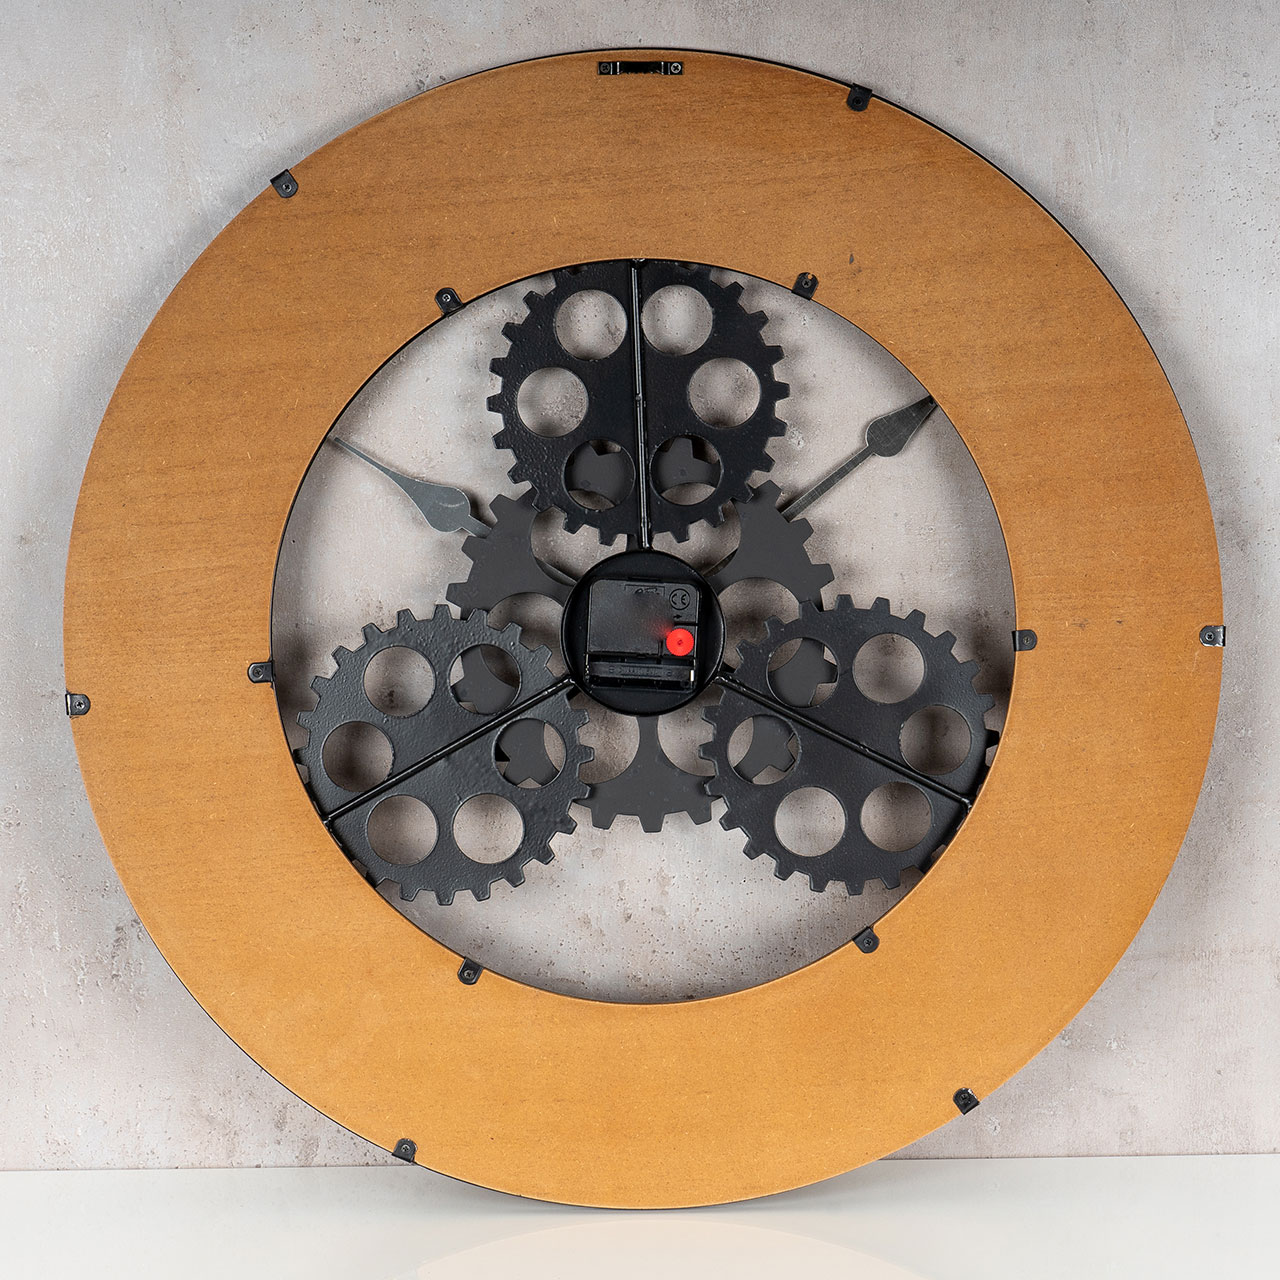 XXL Wanduhr 56 cm Rund Zahnrad Uhr Braun Schwarz Großuhr Industrie-Design Holz